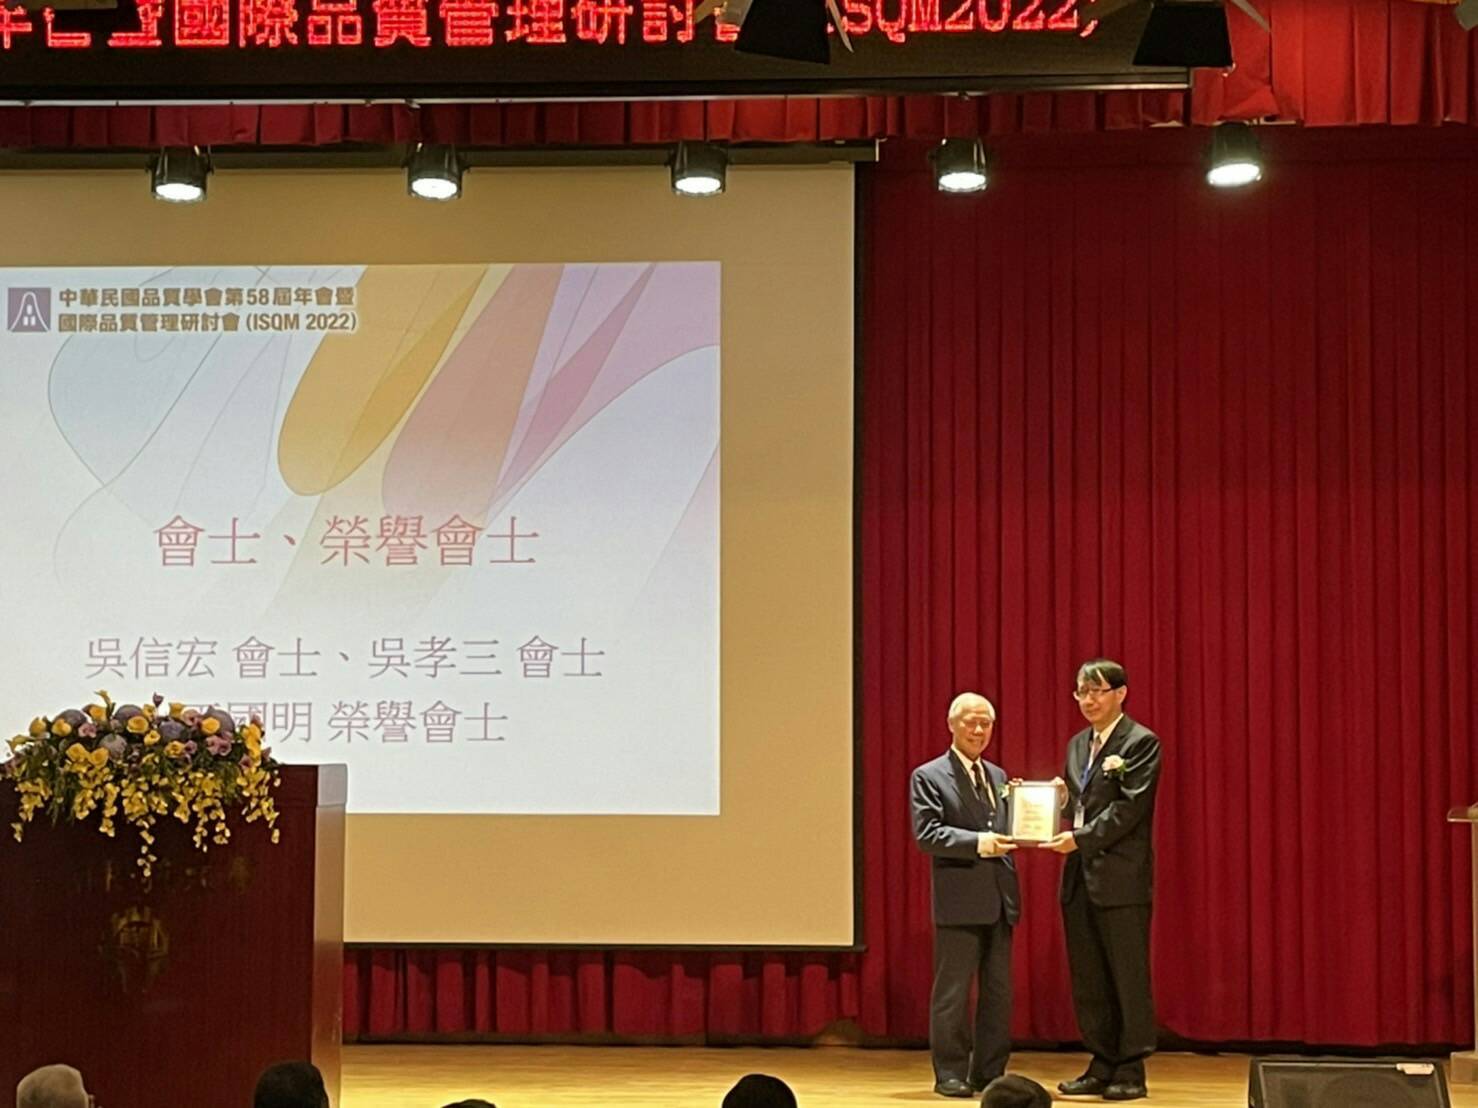 中華民國品質學會副召集委員白賜清教授（左）頒予當選證書予吳信宏院長（右）。